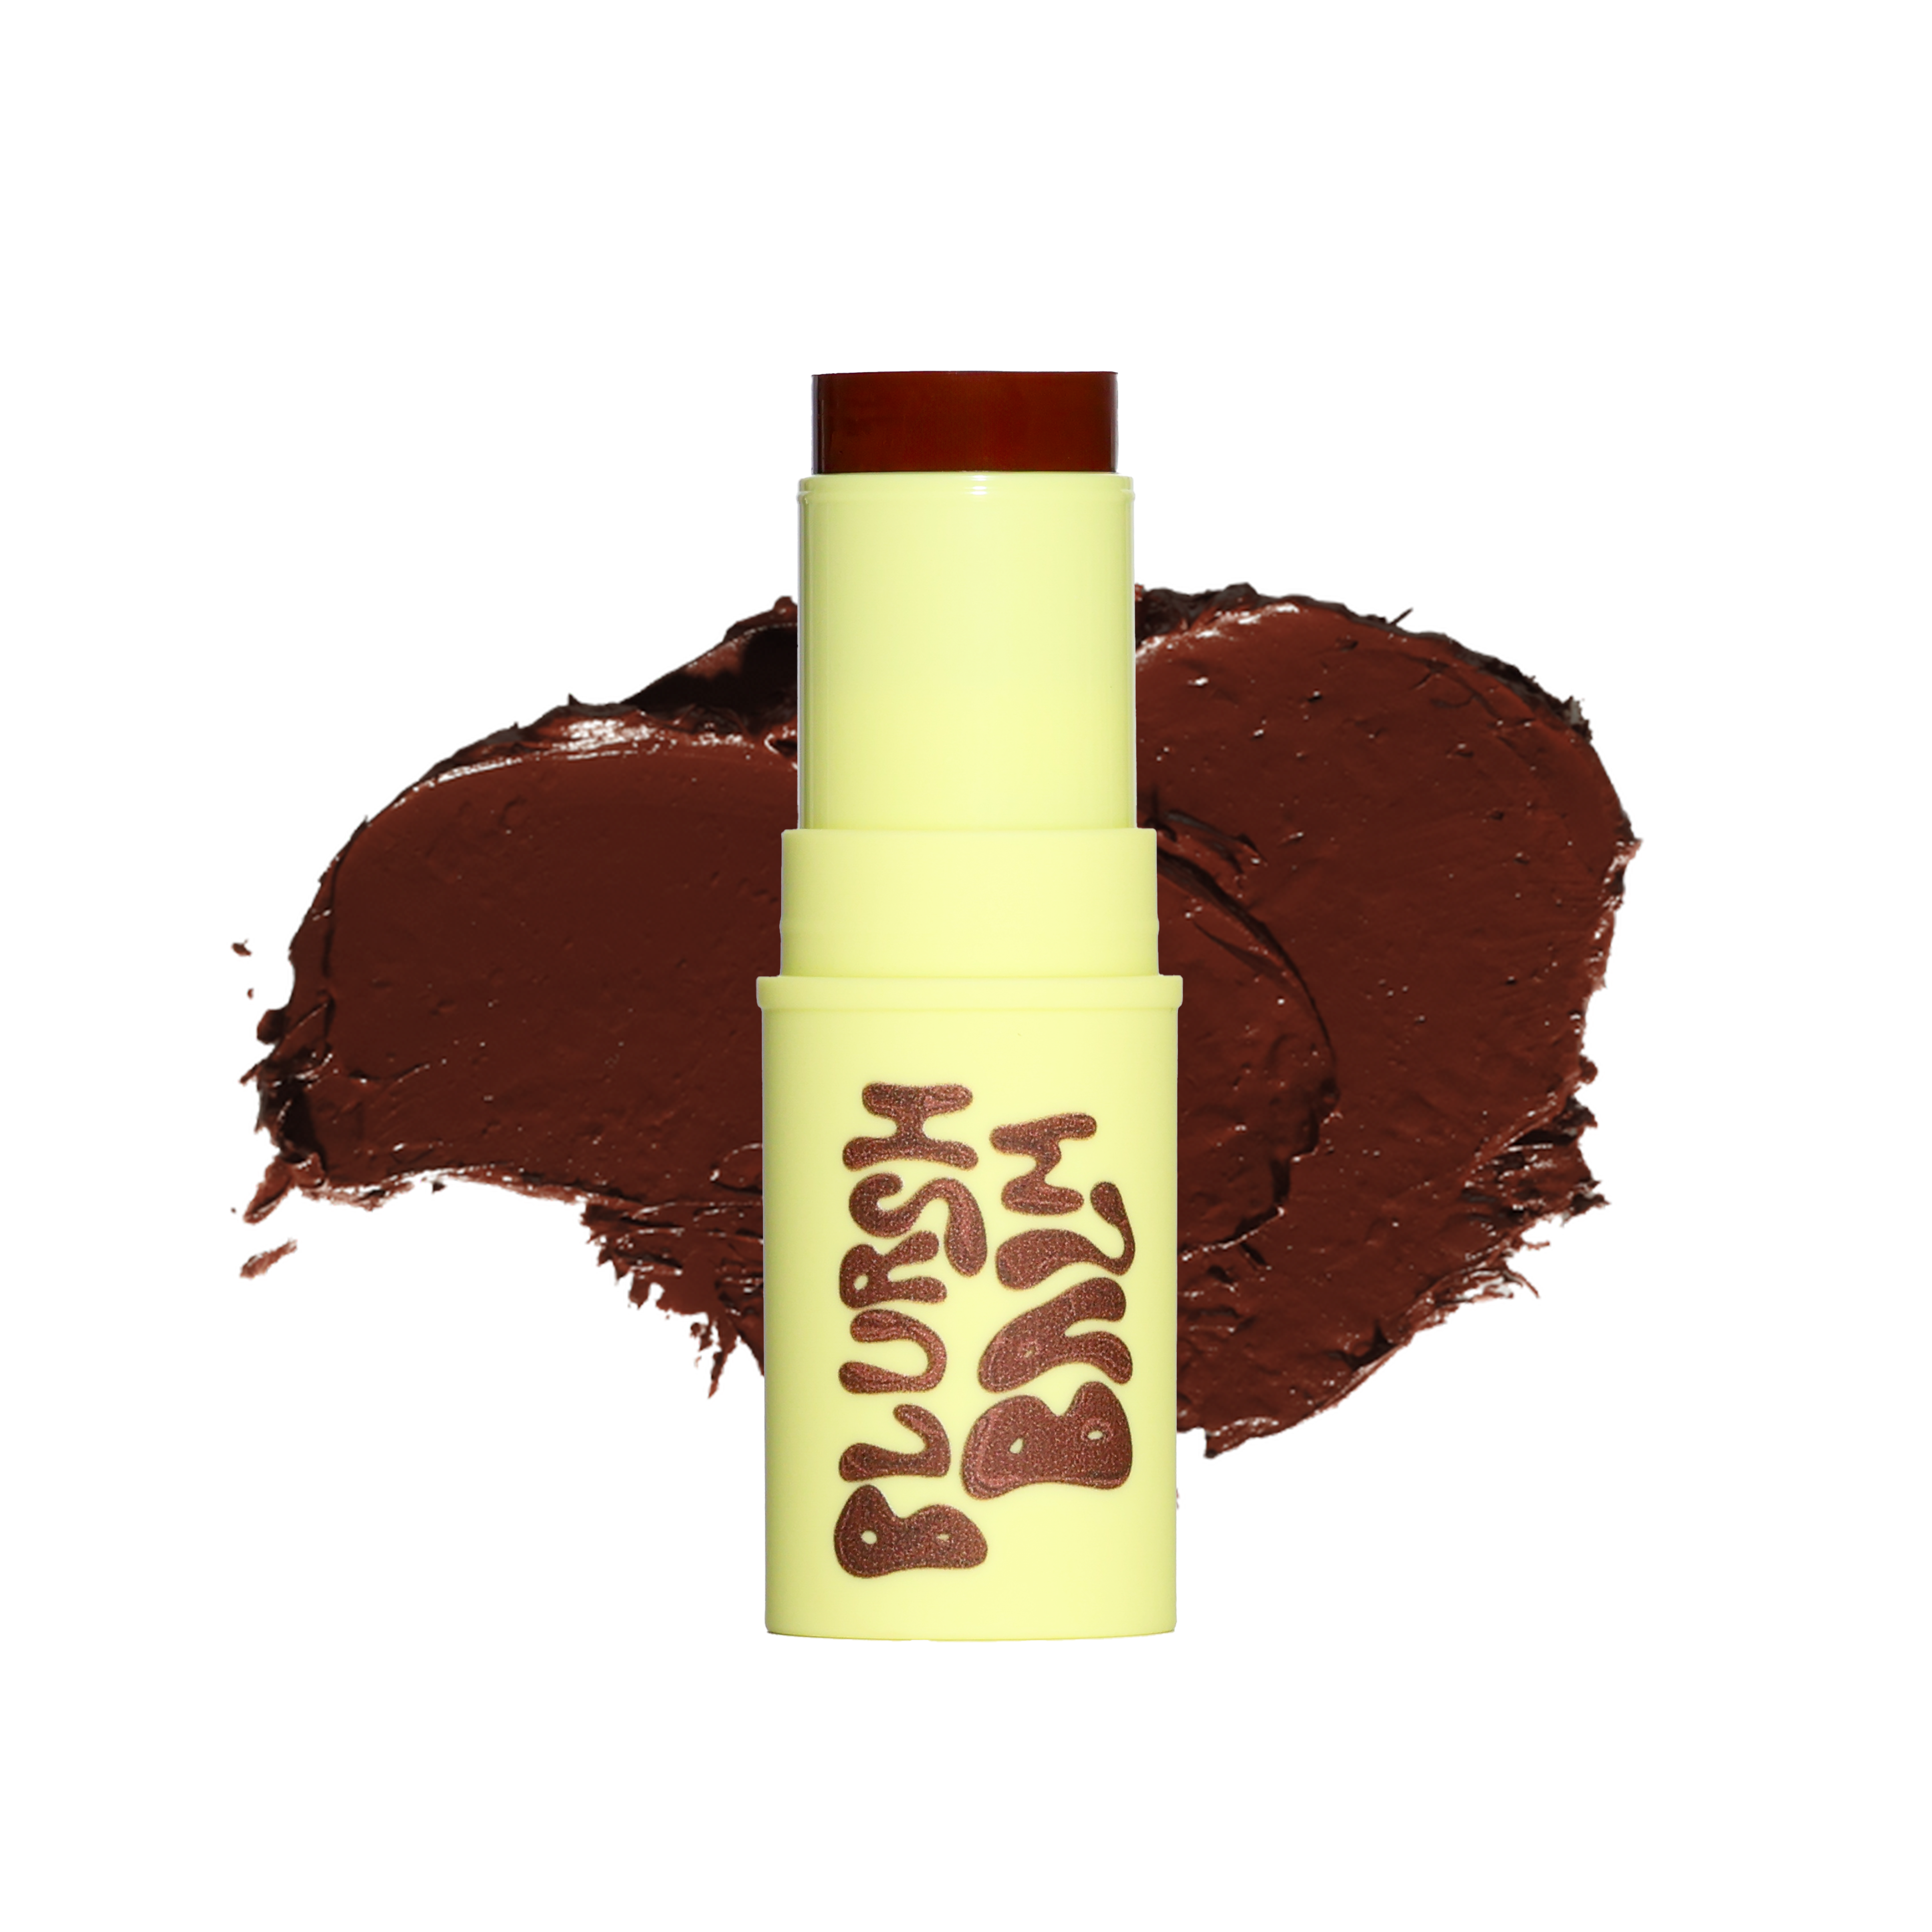 Blursh Balm Bronzed - Cream Bronzer